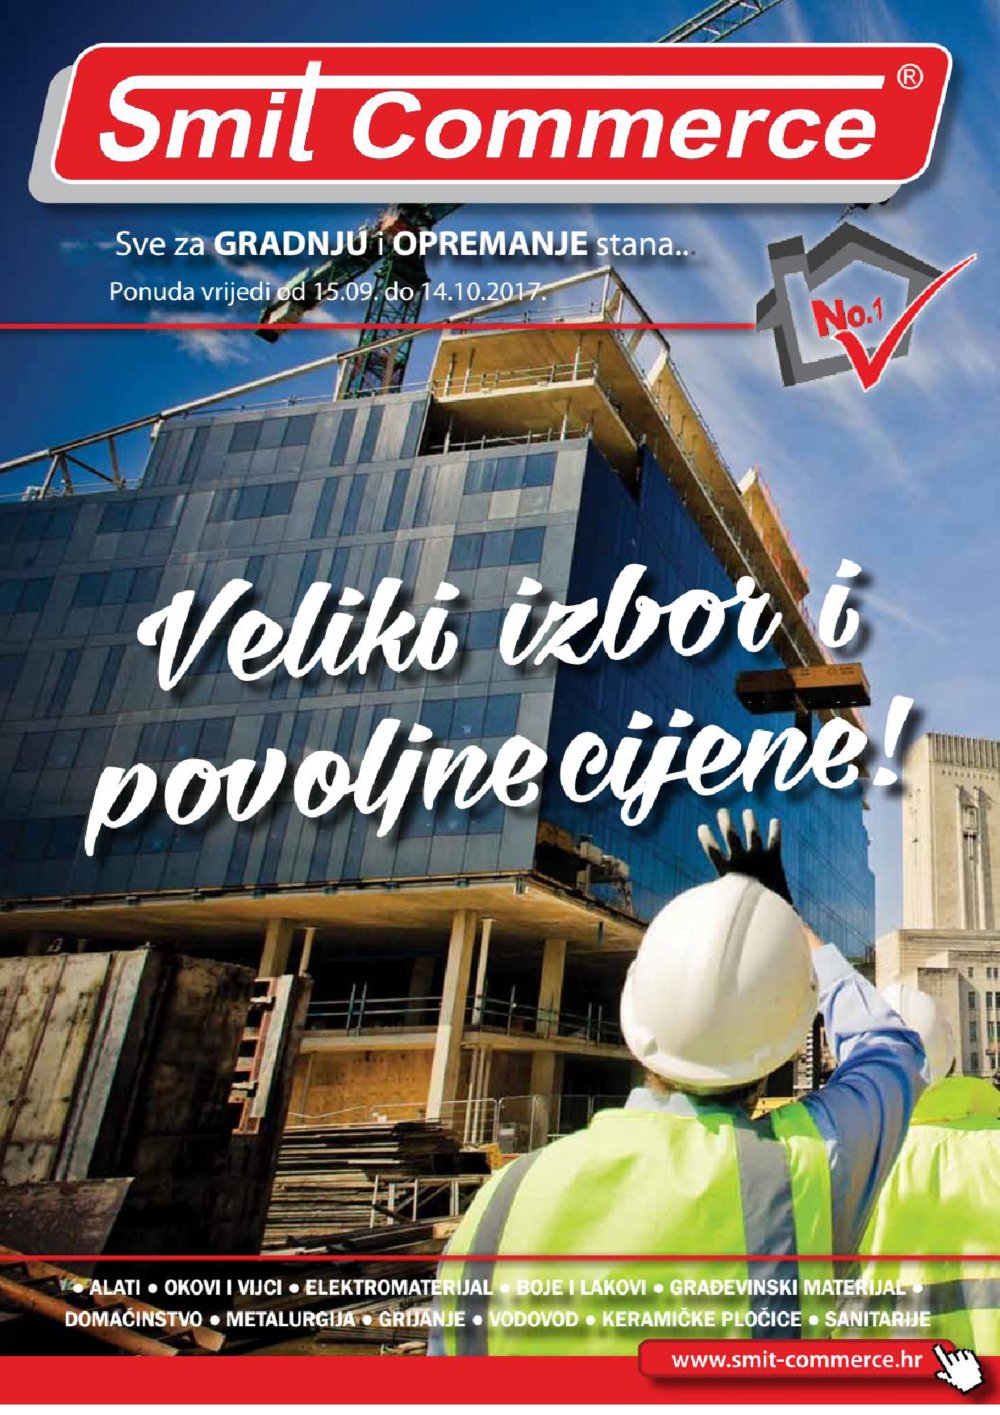 Smit Commerce katalog Sve za gradnju i opremanje stana 15.09.-14.10.2017.